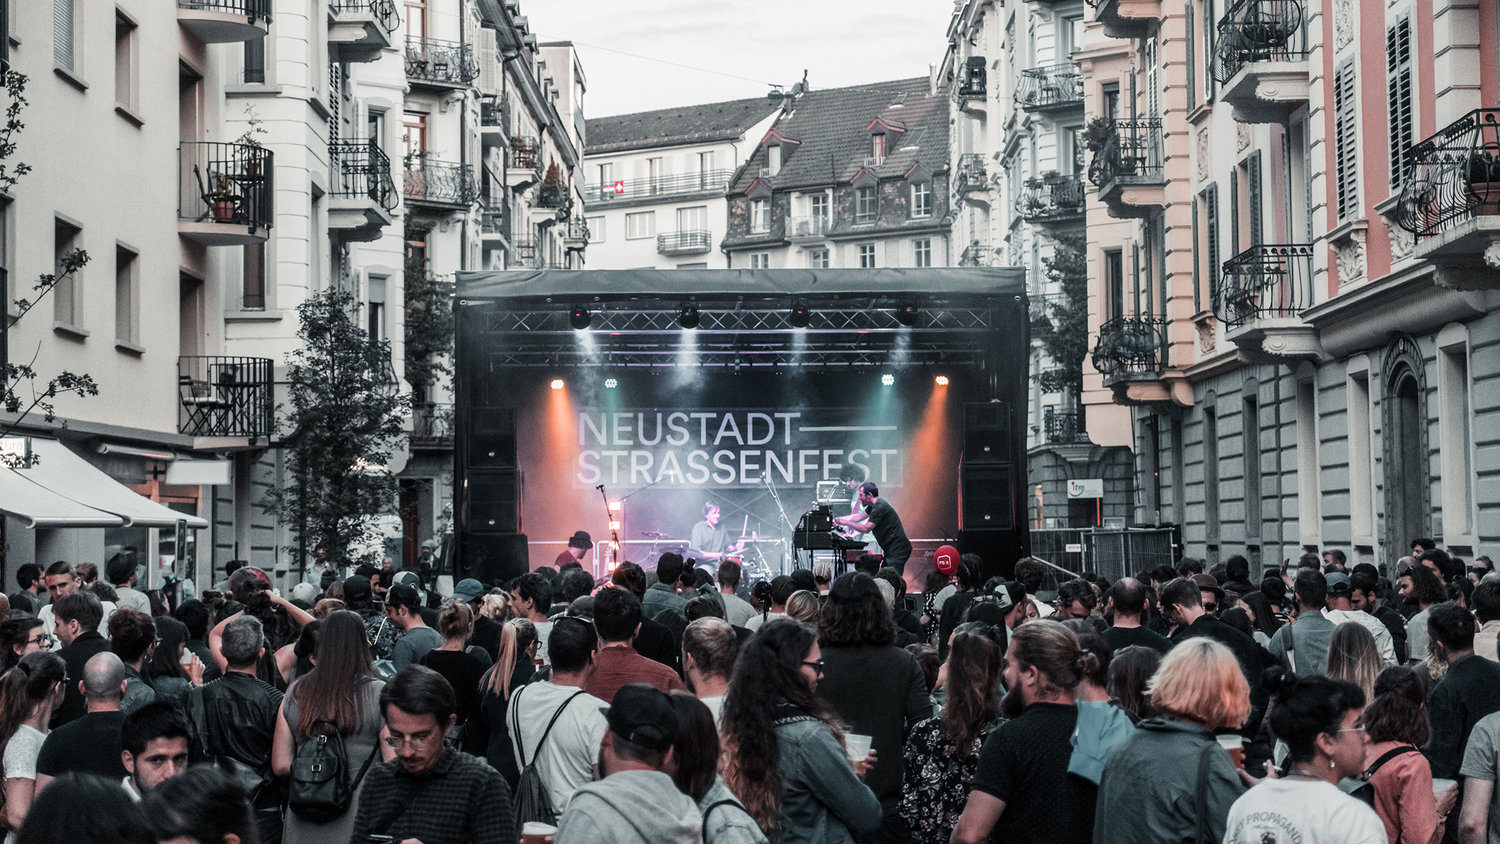 (c) Neustadt-strassenfest.ch